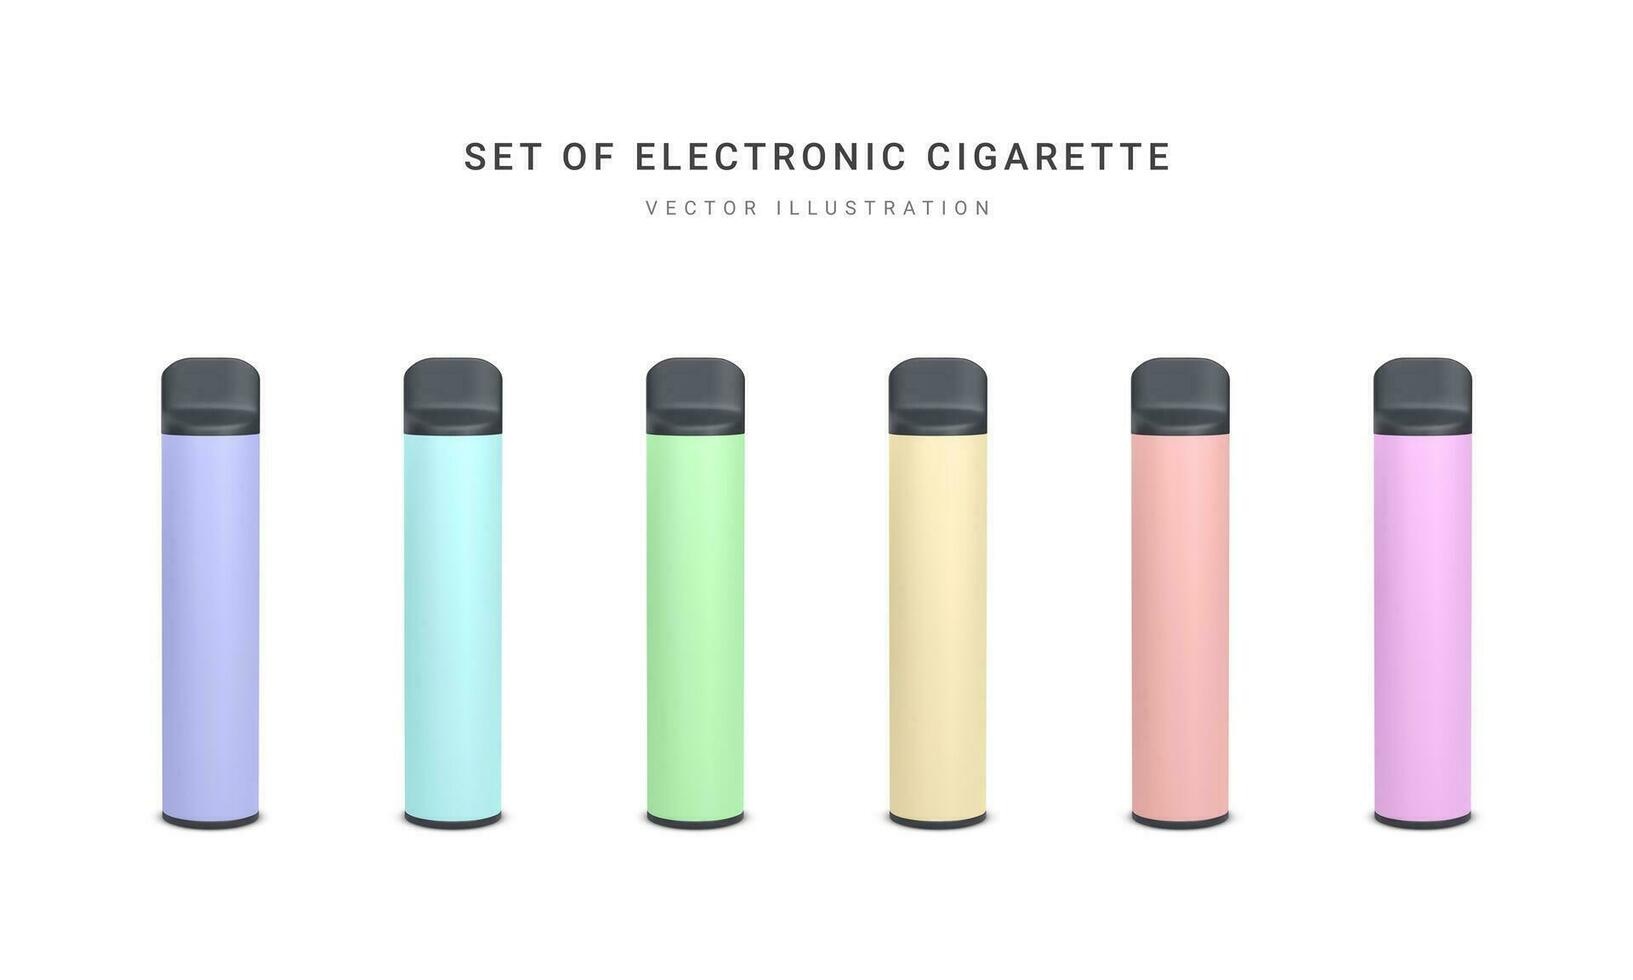 impostato di 3d realistico monouso elettronico sigaretta isolato su bianca sfondo. moderno fumare, vaping e nicotina con diverso sapori. vettore illustrazione